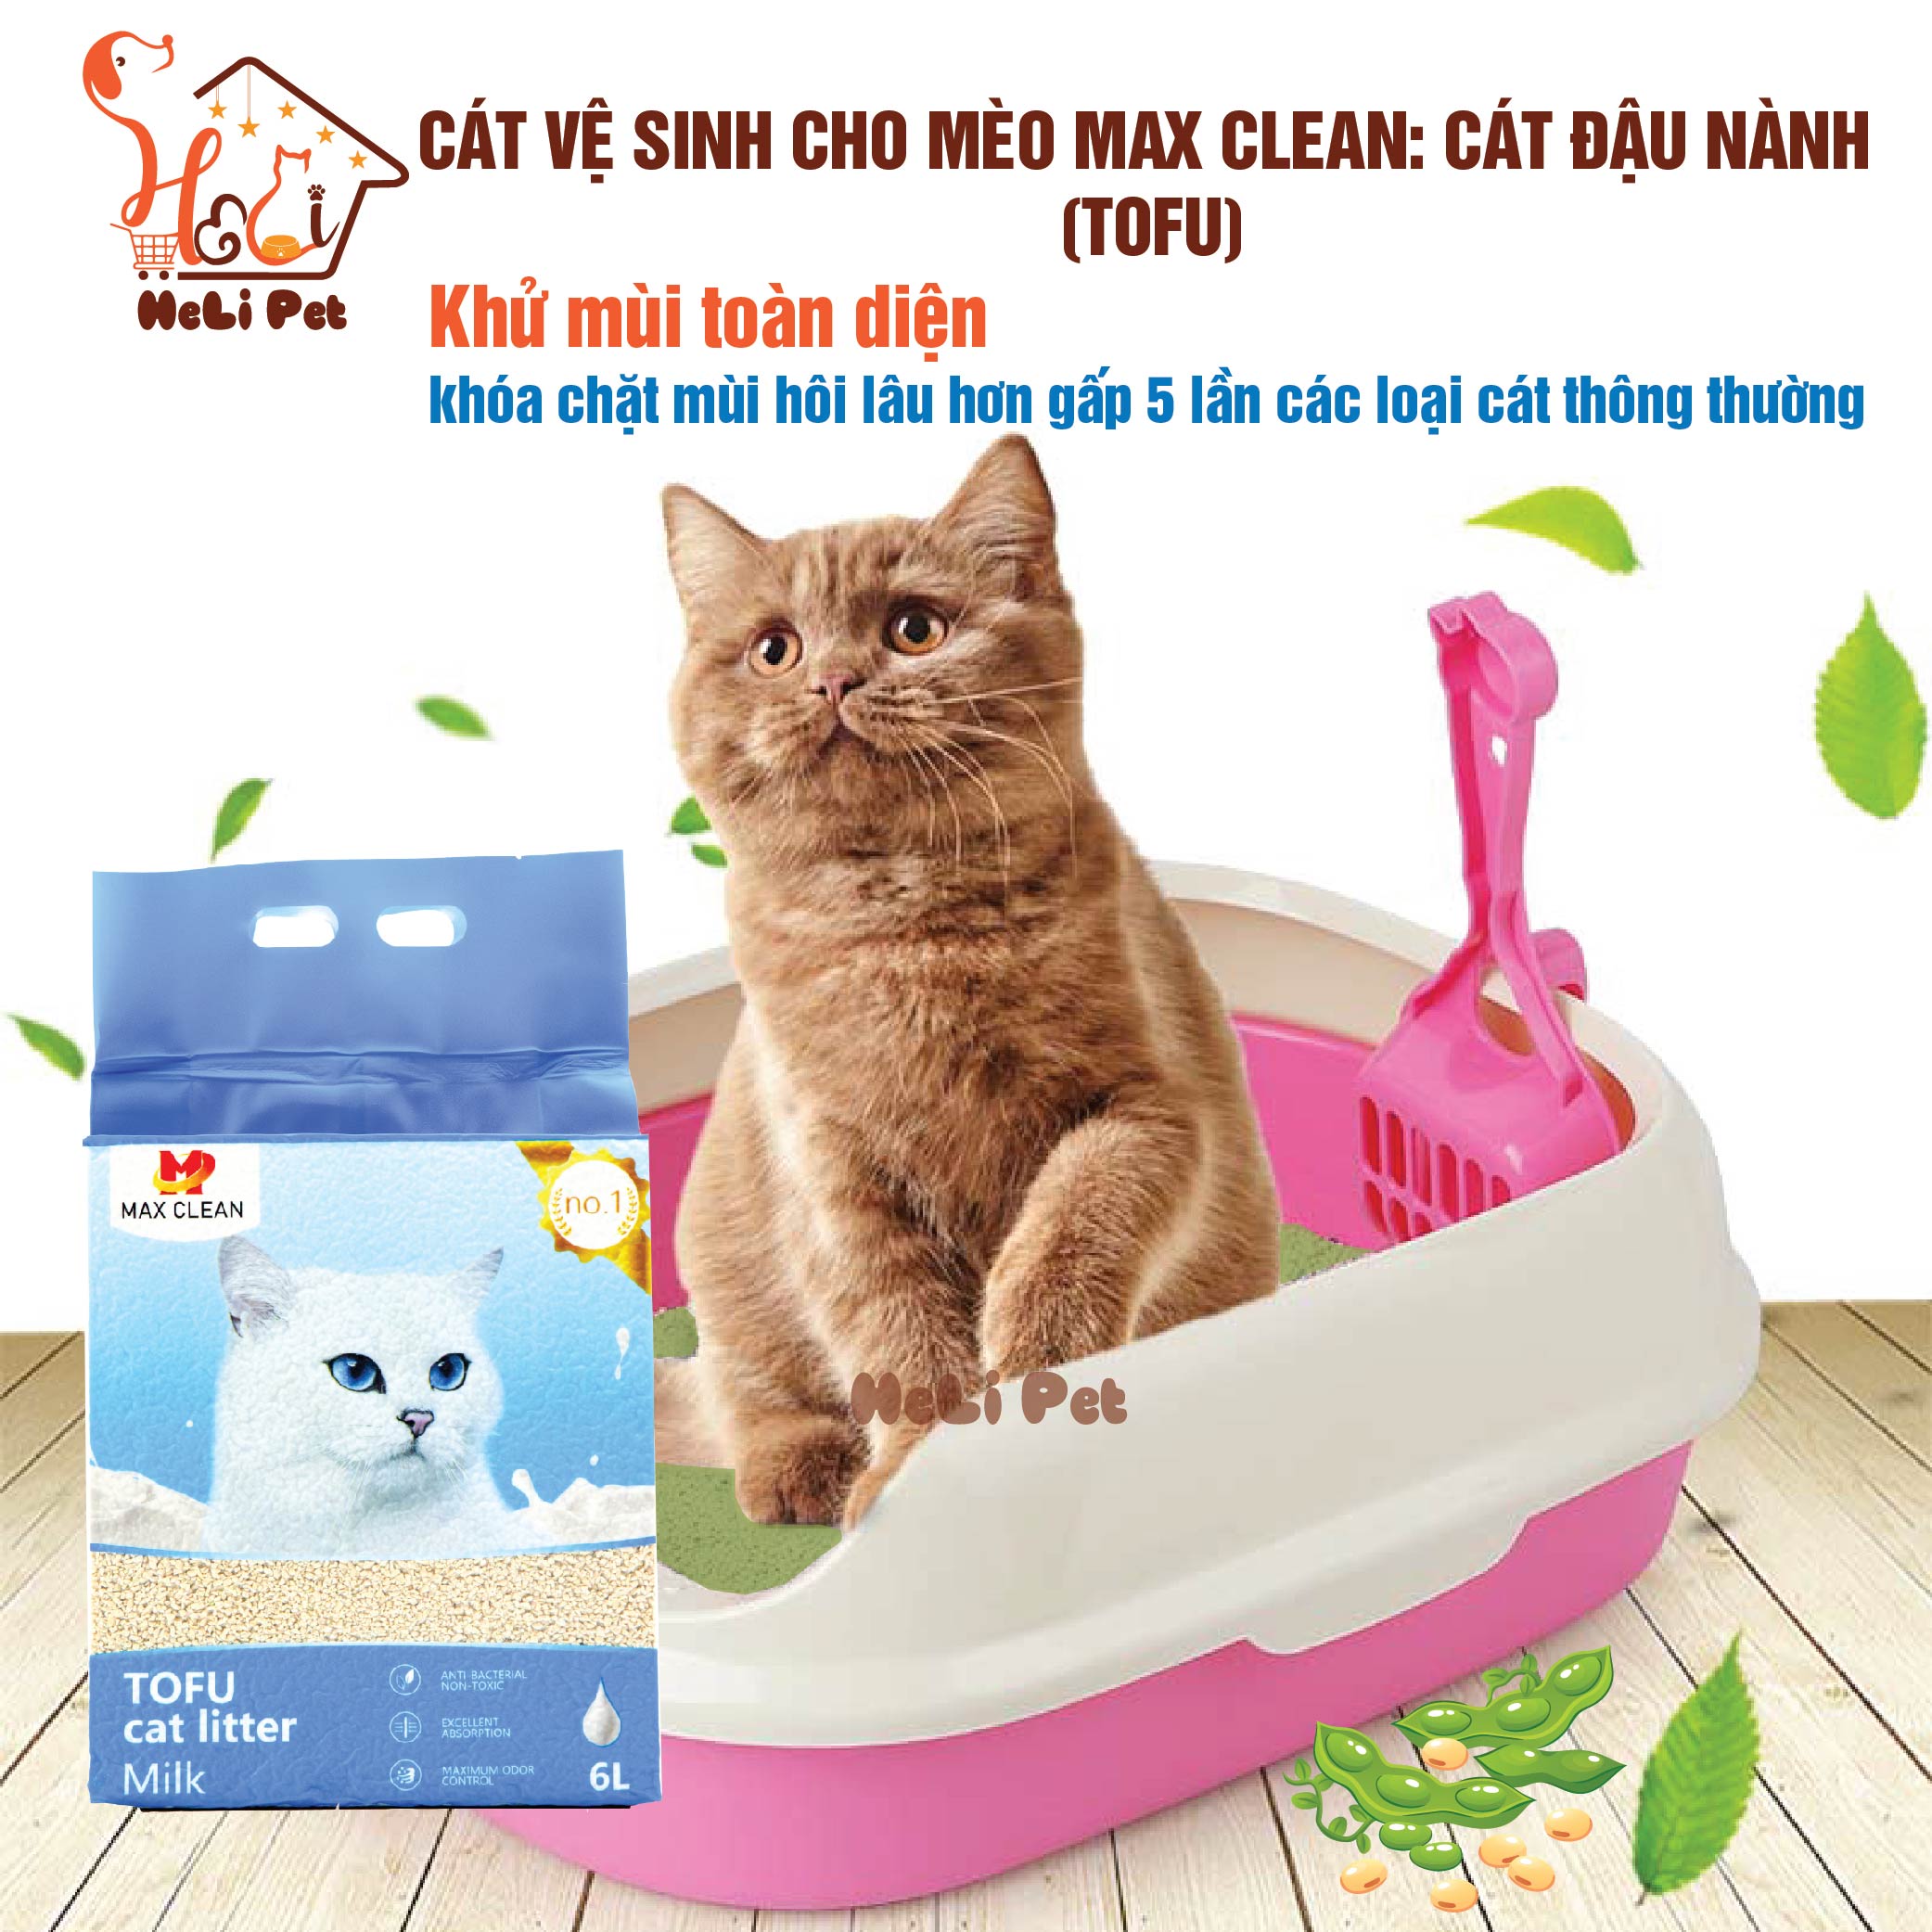 Cát Đậu Nành Max Clean HƯƠNG SỮA Cát Vệ Sinh Cao Cấp Cho Mèo Siêu Vón Cục Không Bụi, Tan Trong Nước- HeLiPet